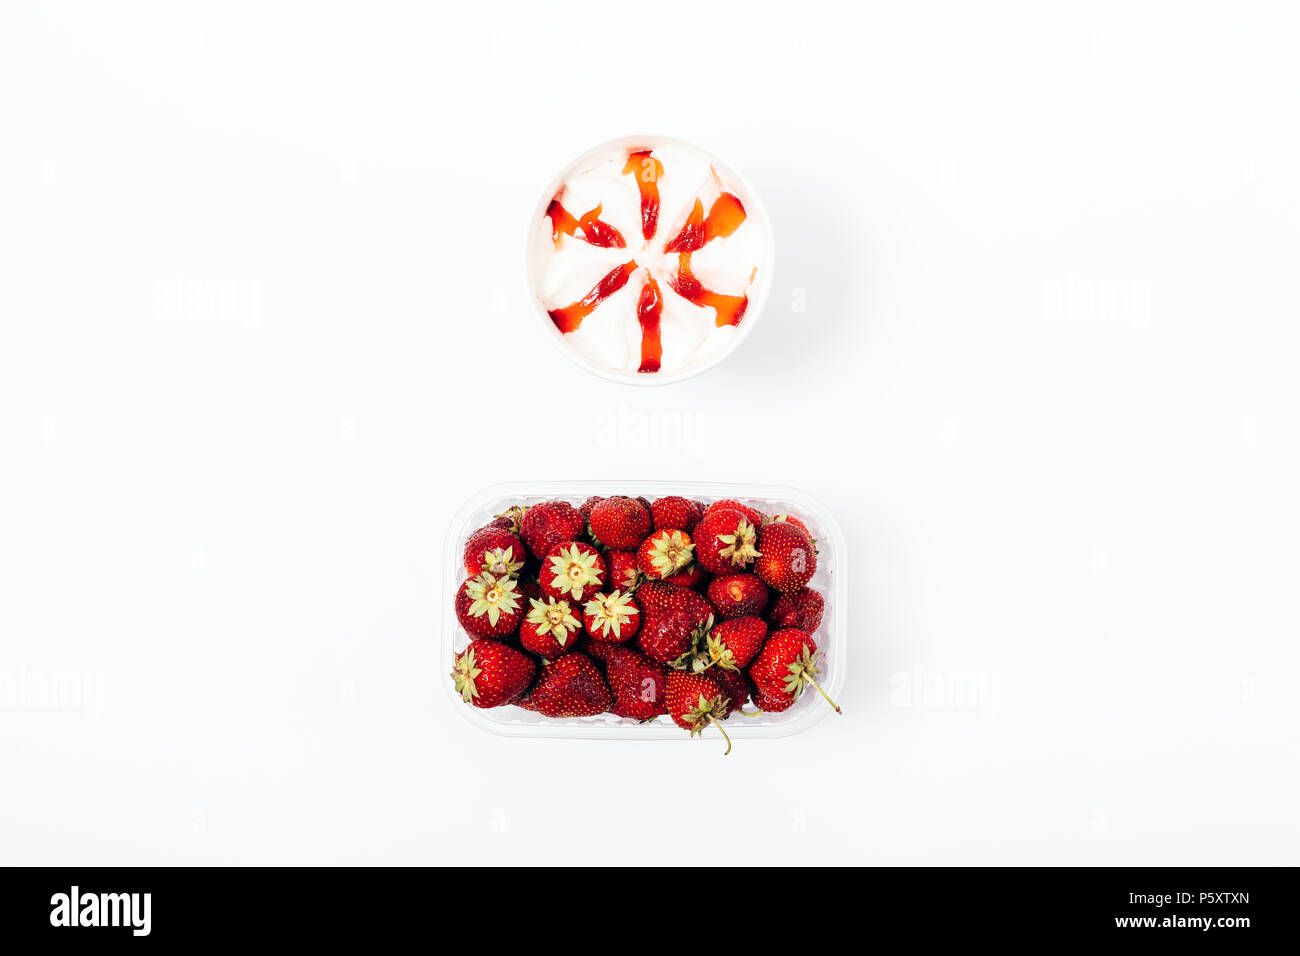 Eis mit topping Sirup und eine Schachtel mit frischen Erdbeeren, Ansicht von oben. Flach minimale Zusammensetzung der gefrorenen Desserts und roten Beeren auf einem weißen zurück Stockfoto